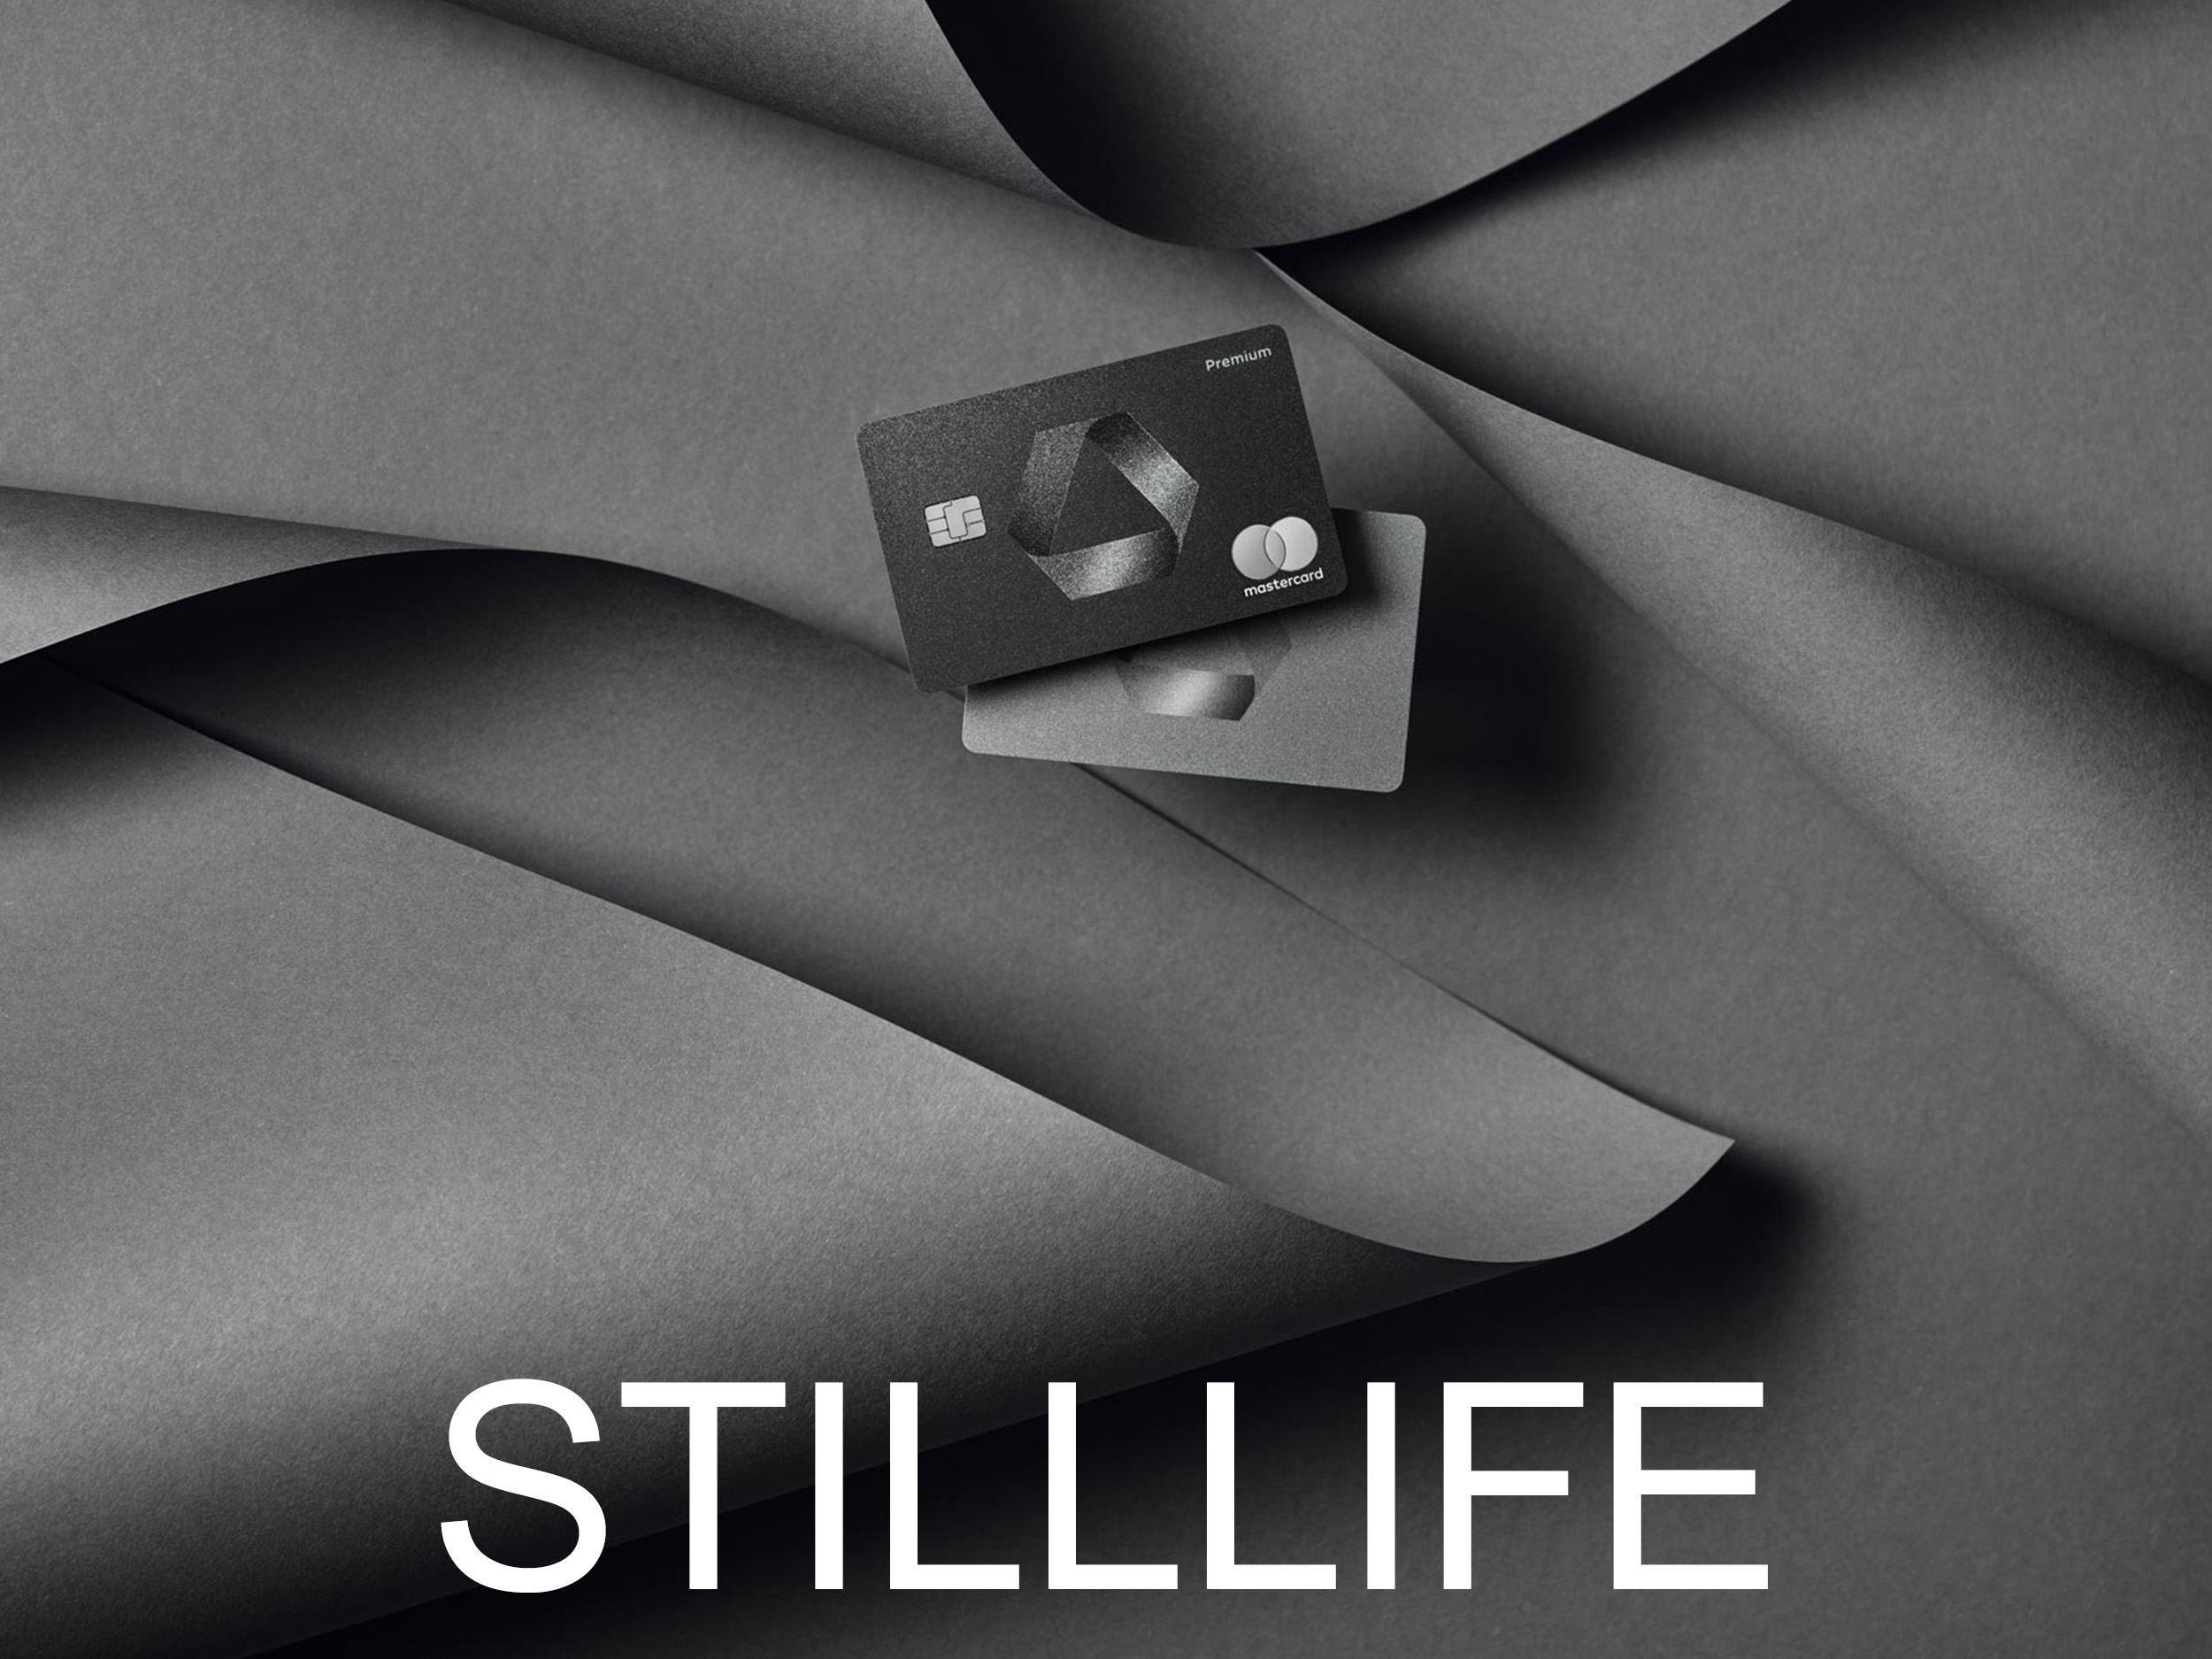 Startbild Stilllife, als Link zur Stilllifeseite